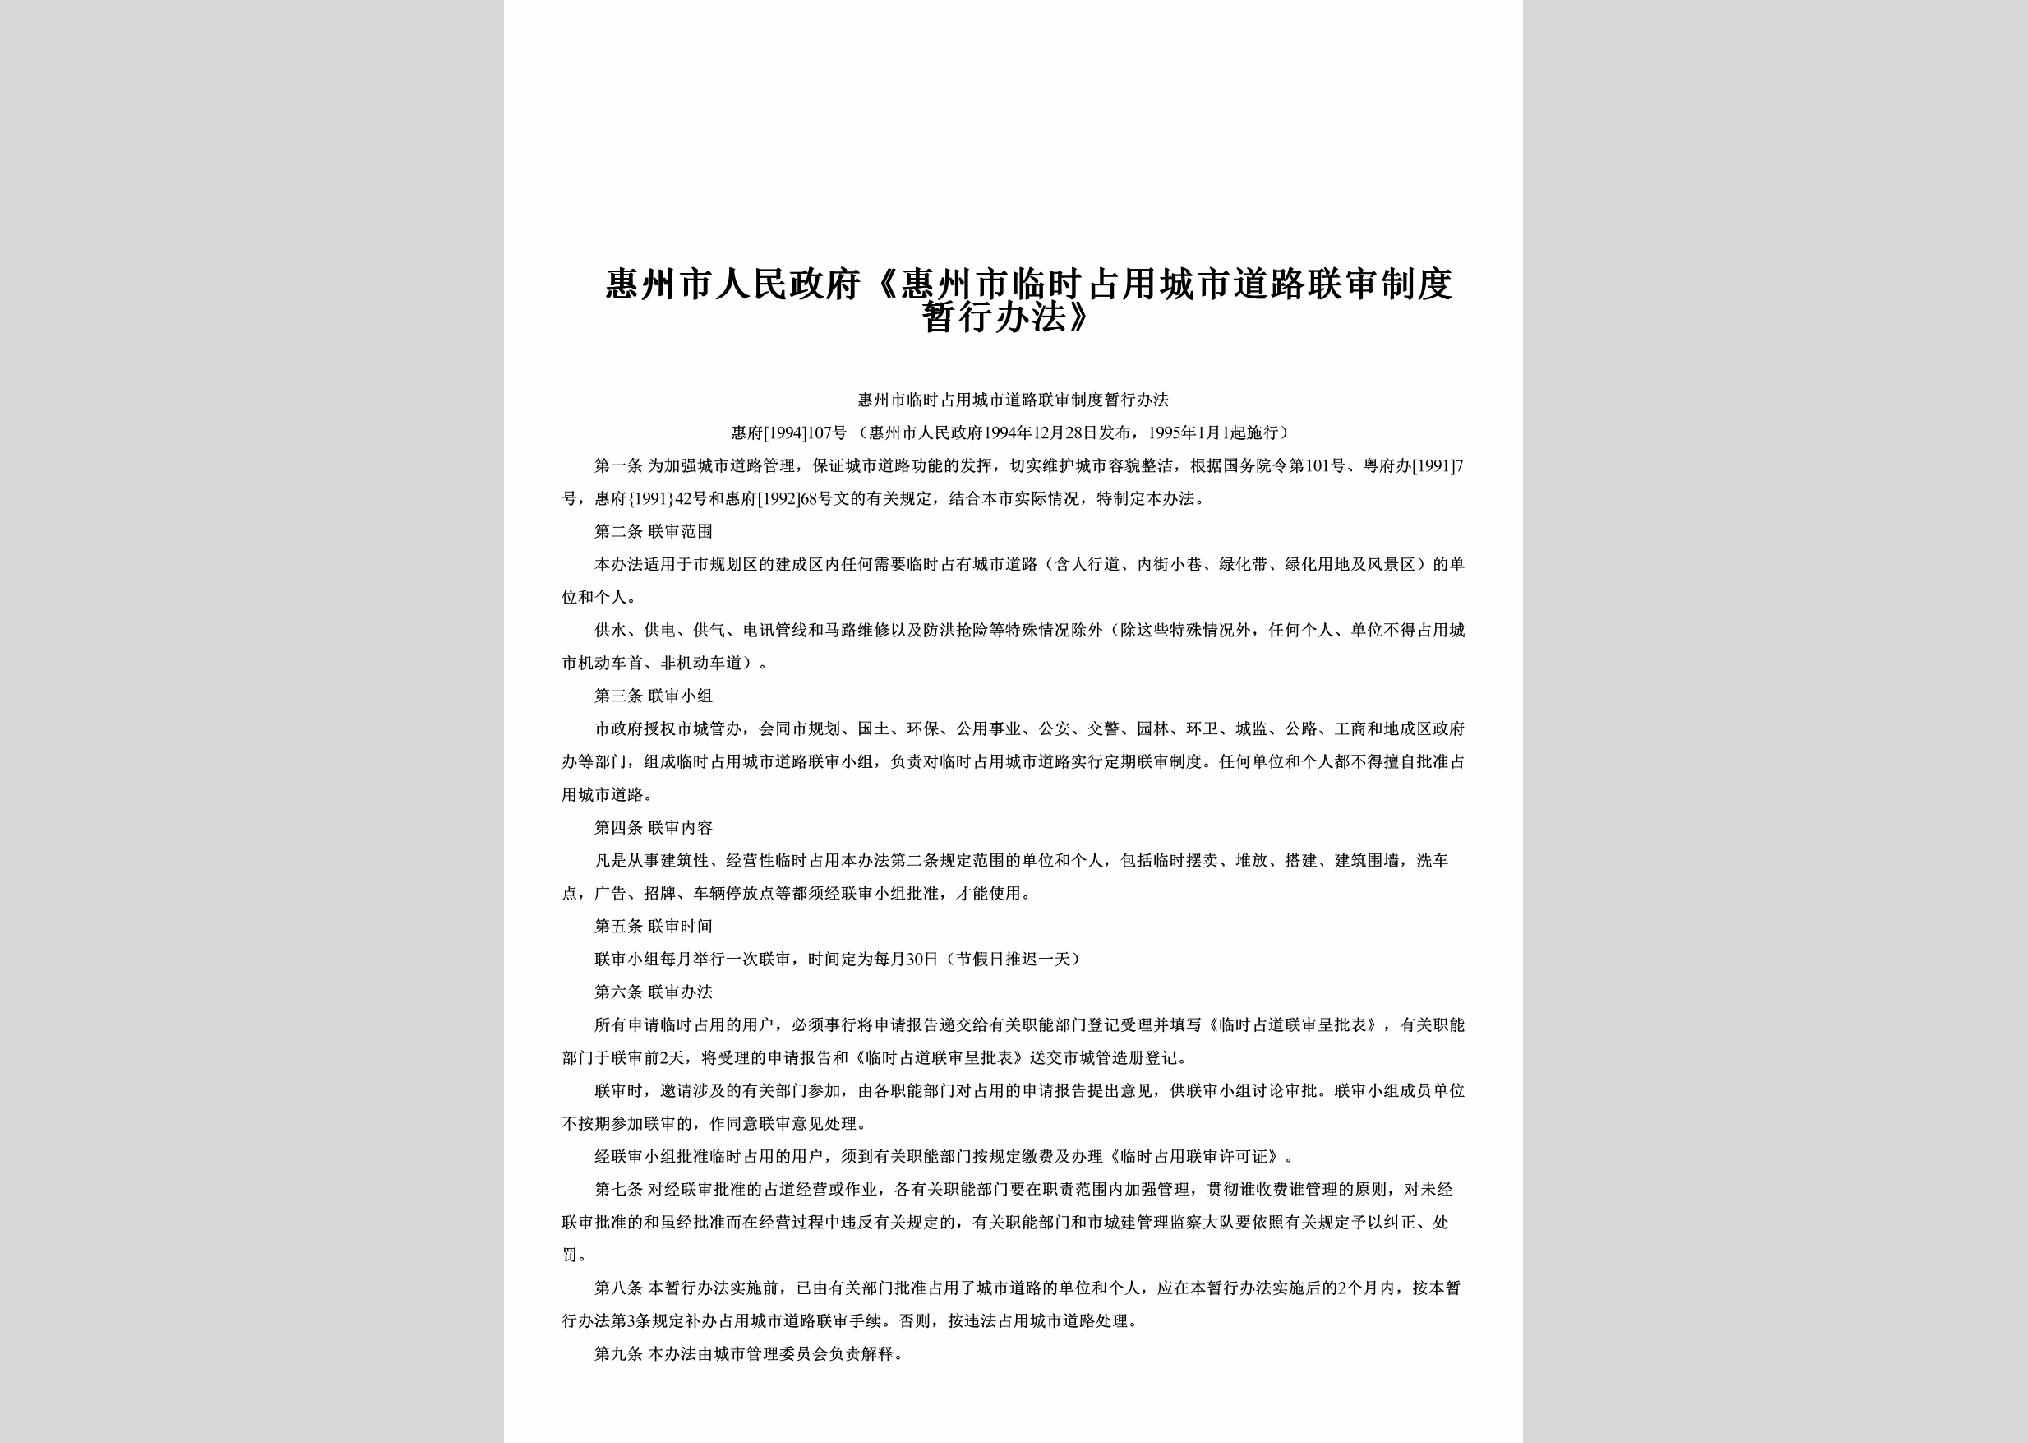 惠府[1994]107号：《惠州市临时占用城市道路联审制度暂行办法》